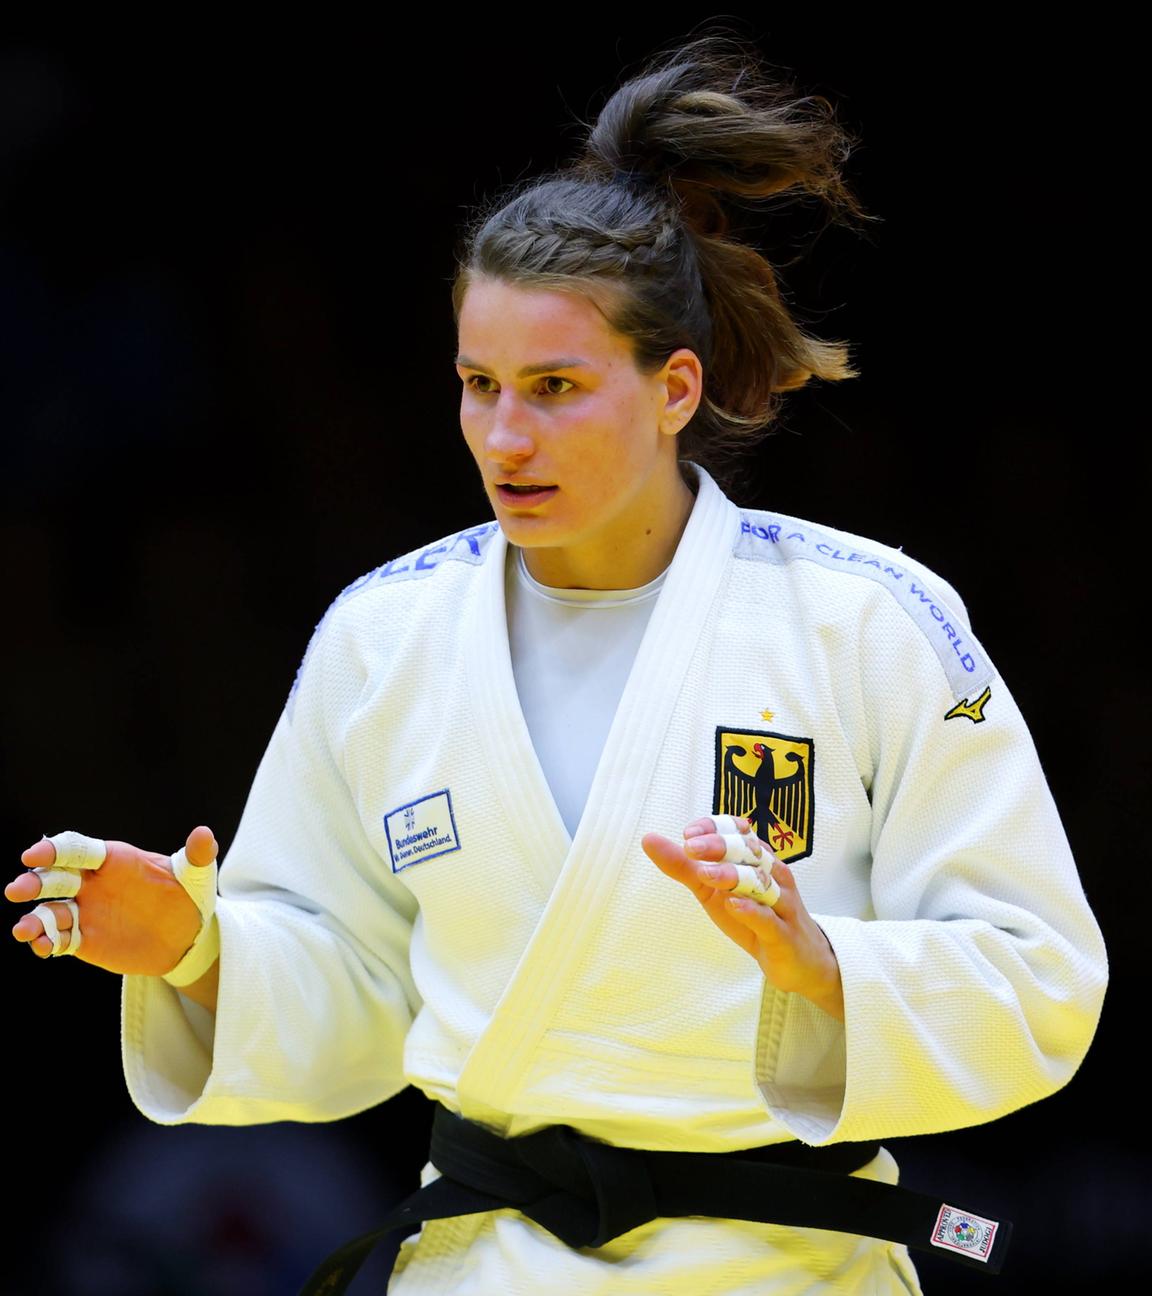 Fahnenträgerin für Deutschland: Judoka Anna-Maria Wagner. Die 28-Jährige gewann bei Olympia 2021 zweimal Bronze und ist zweimalige Weltmeisterin